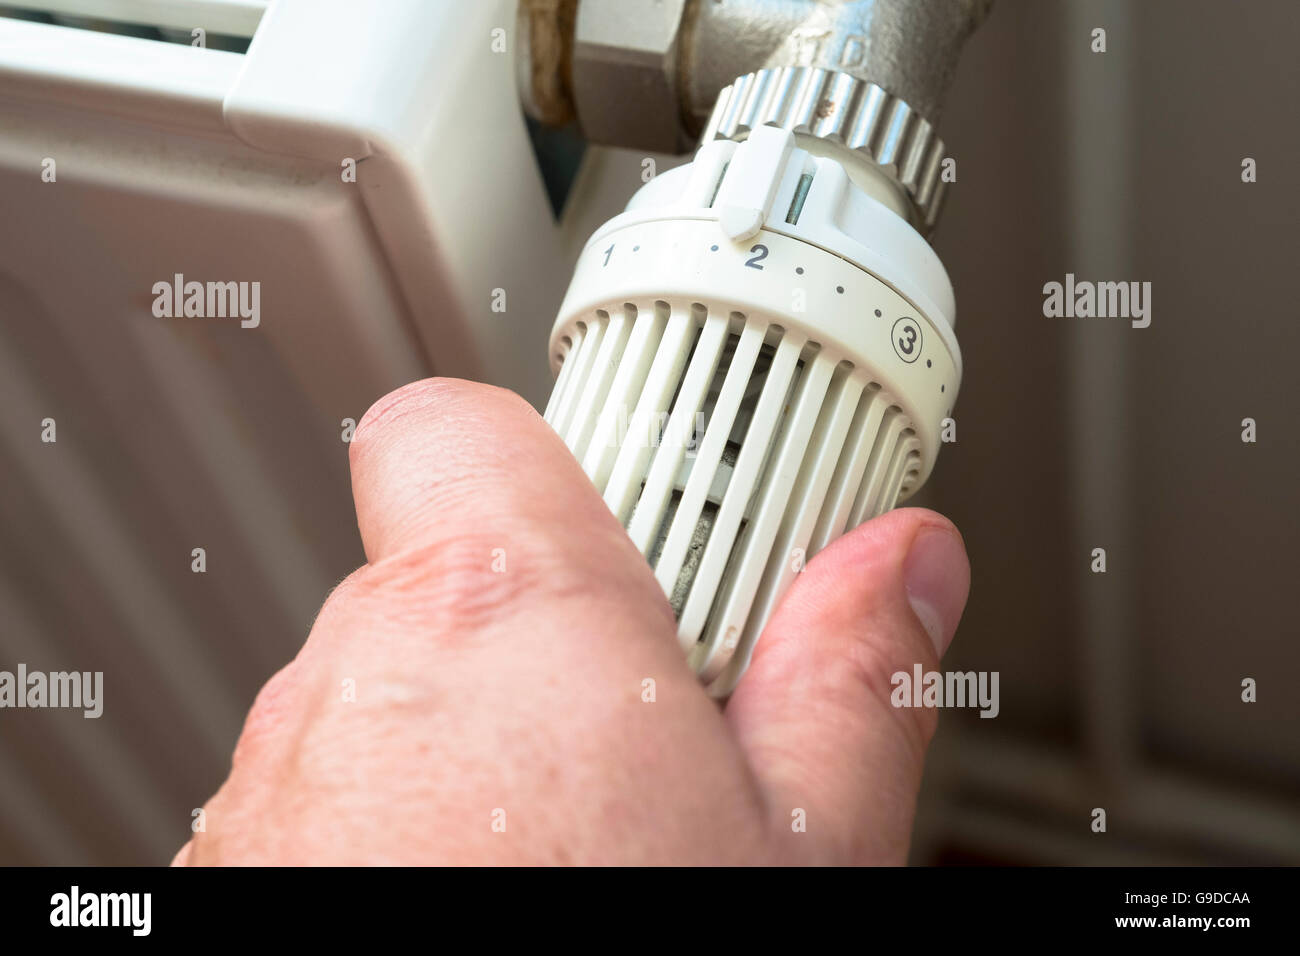 L'uomo ruotando verso il basso il termostato sul gas powered centrale del radiatore di riscaldamento per risparmiare energia Foto Stock